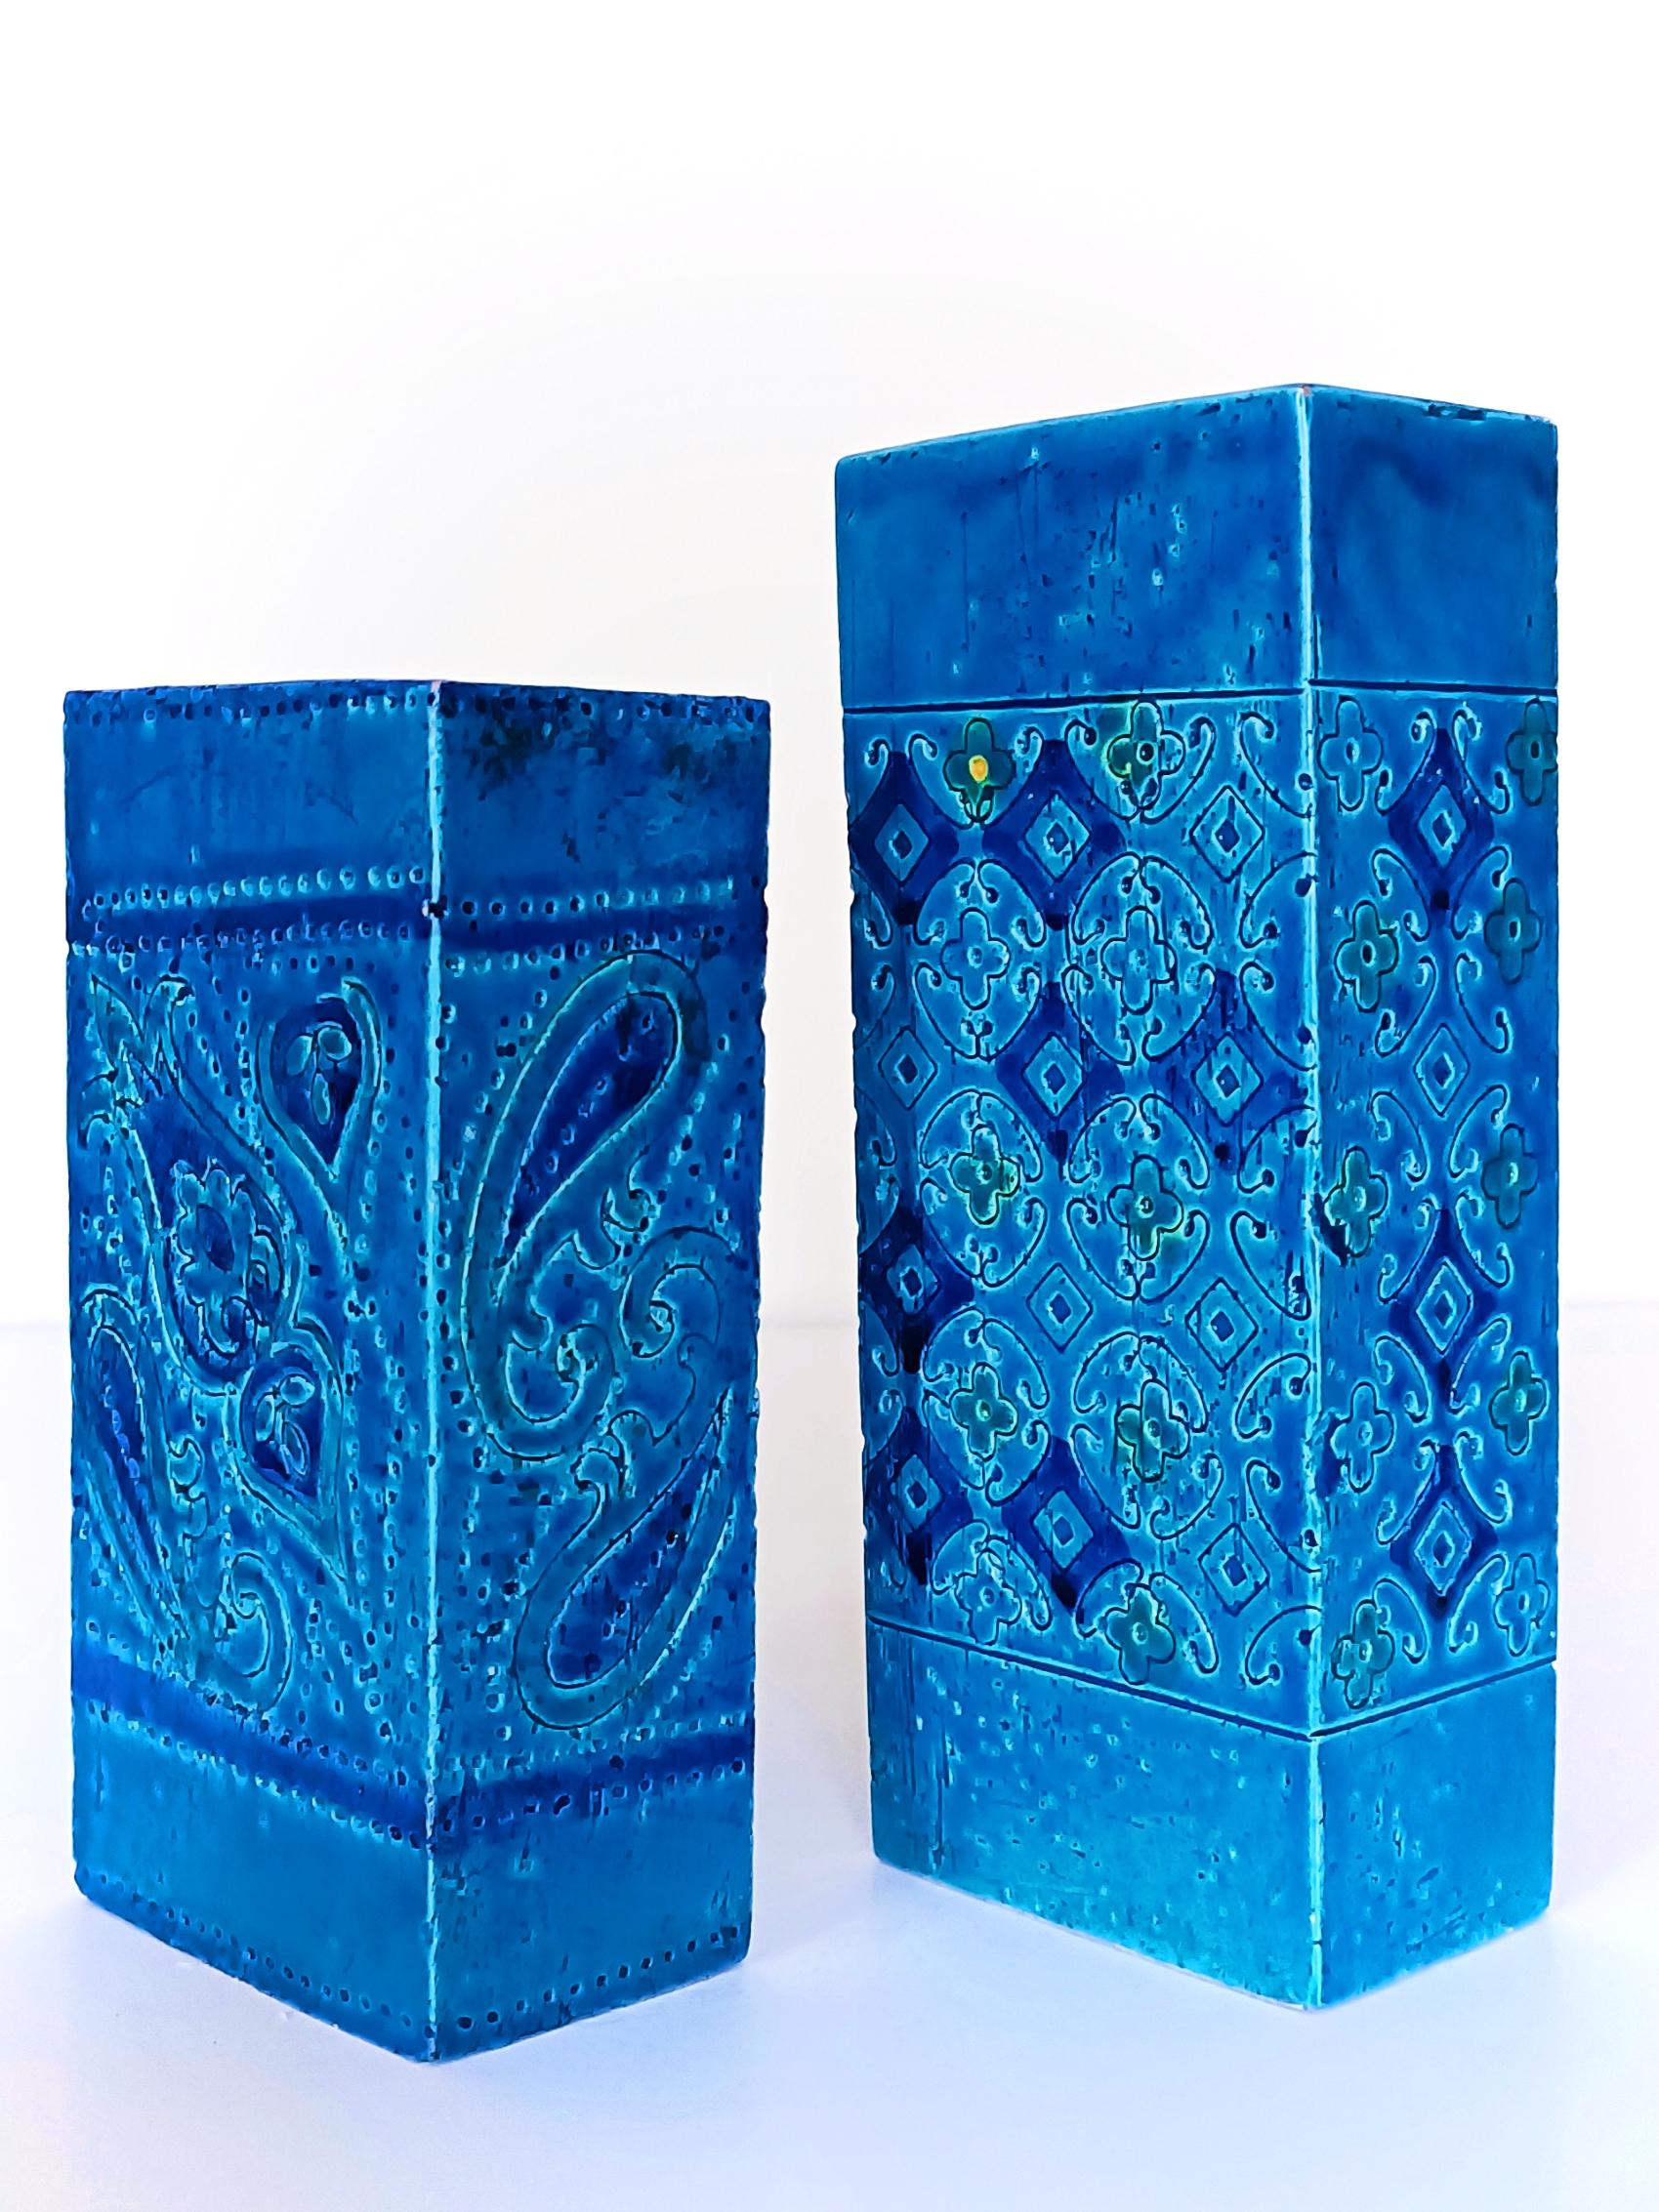 Glazed Vintage Italian Bitossi Aldo Londi Rimini Blu Ceramic Vases, 1960s For Sale